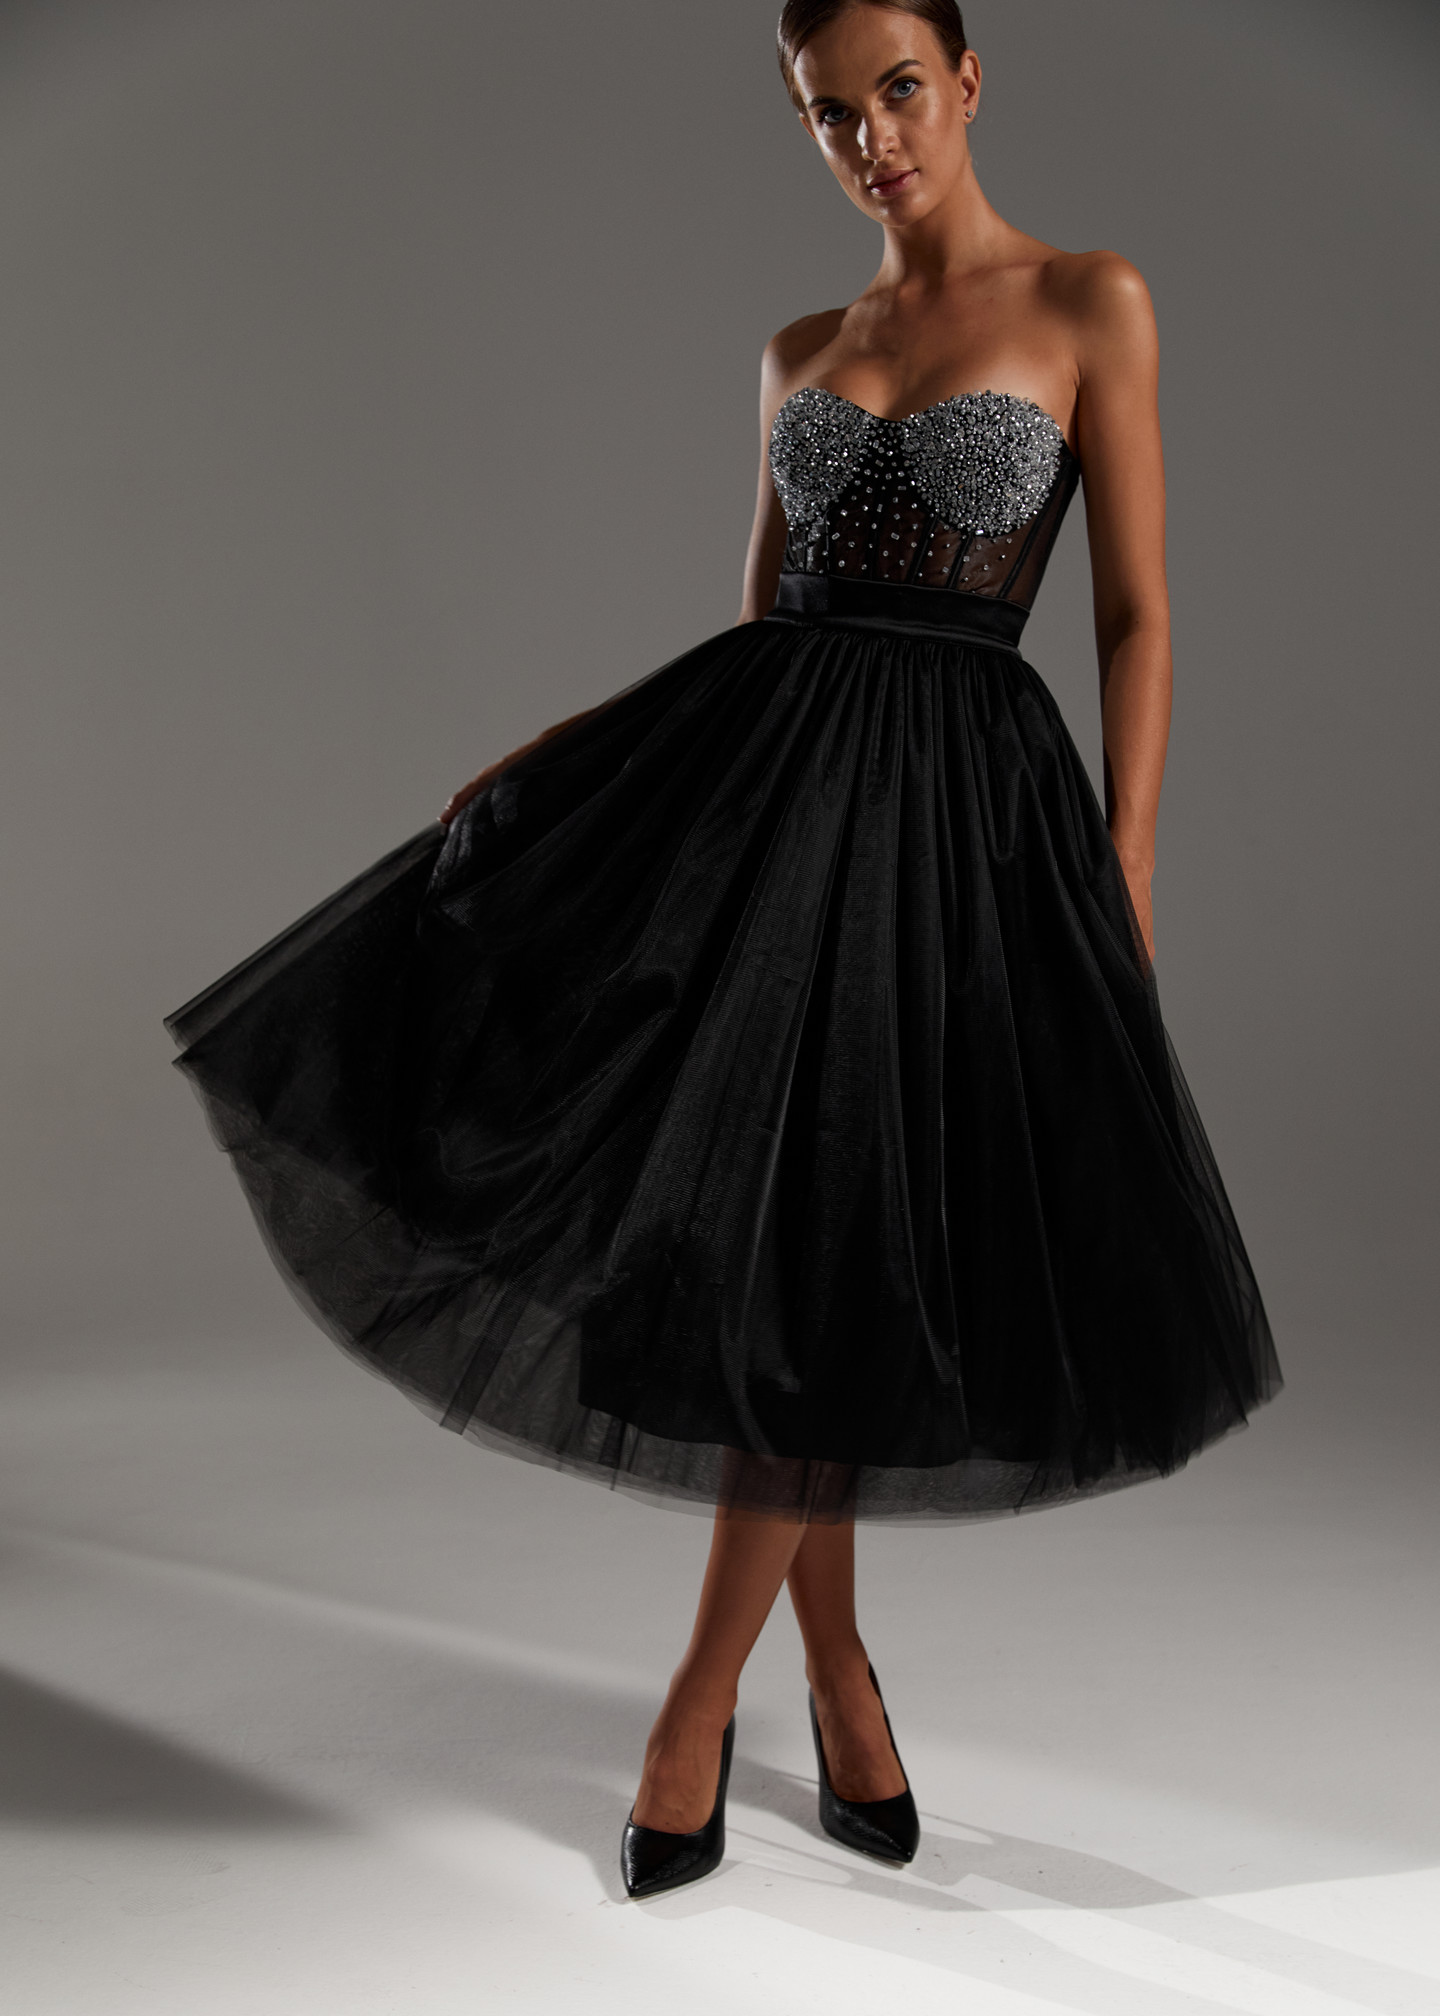 Black tulle skirt, 2021, couture, skirt, evening, black, tulle, black look with corset #1, black look with corset #2, black look with corset #3, black look with corset #4